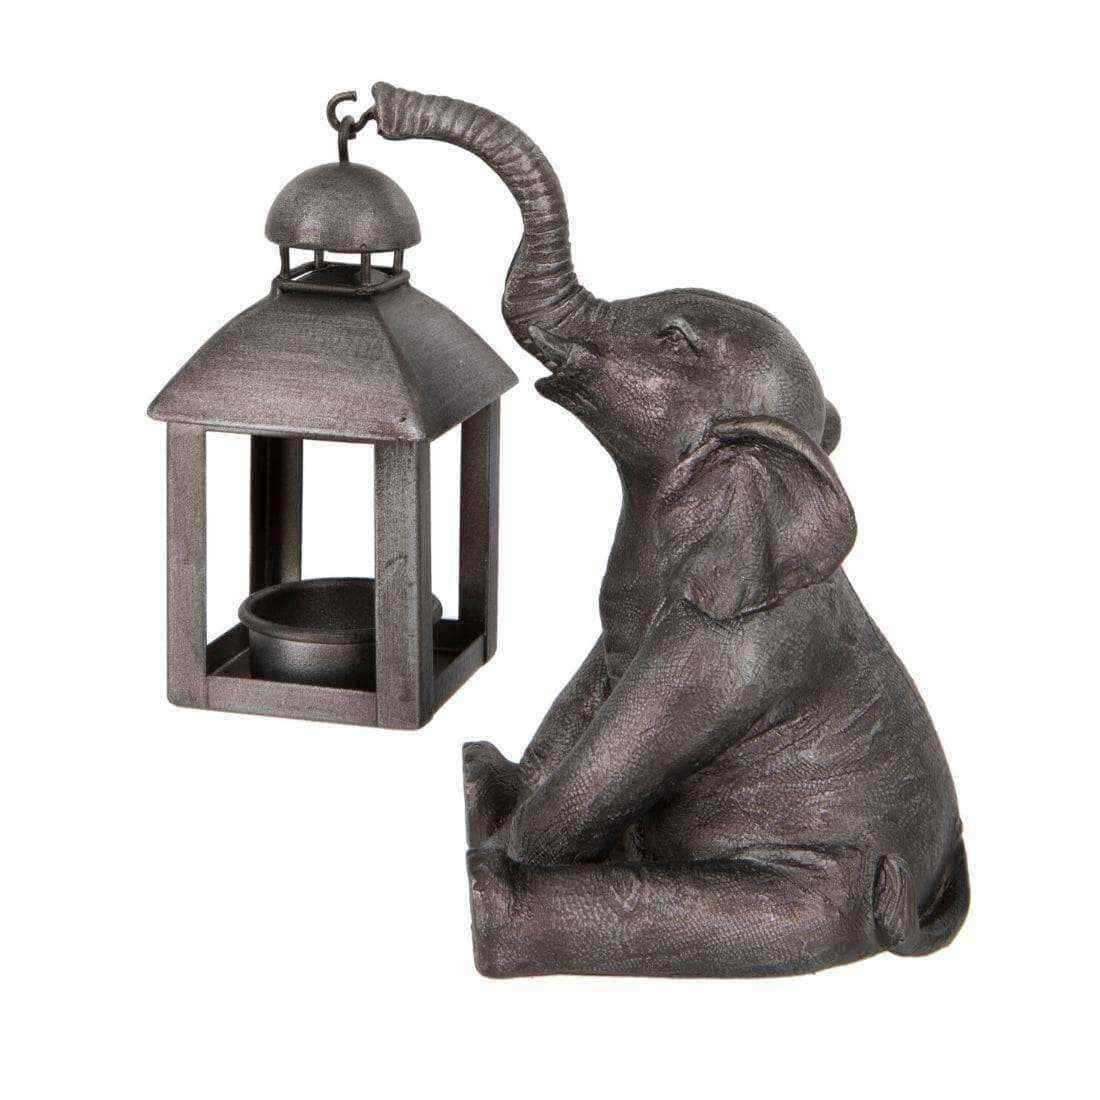 Sitting Elephant Holding a Lantern - The Farthing